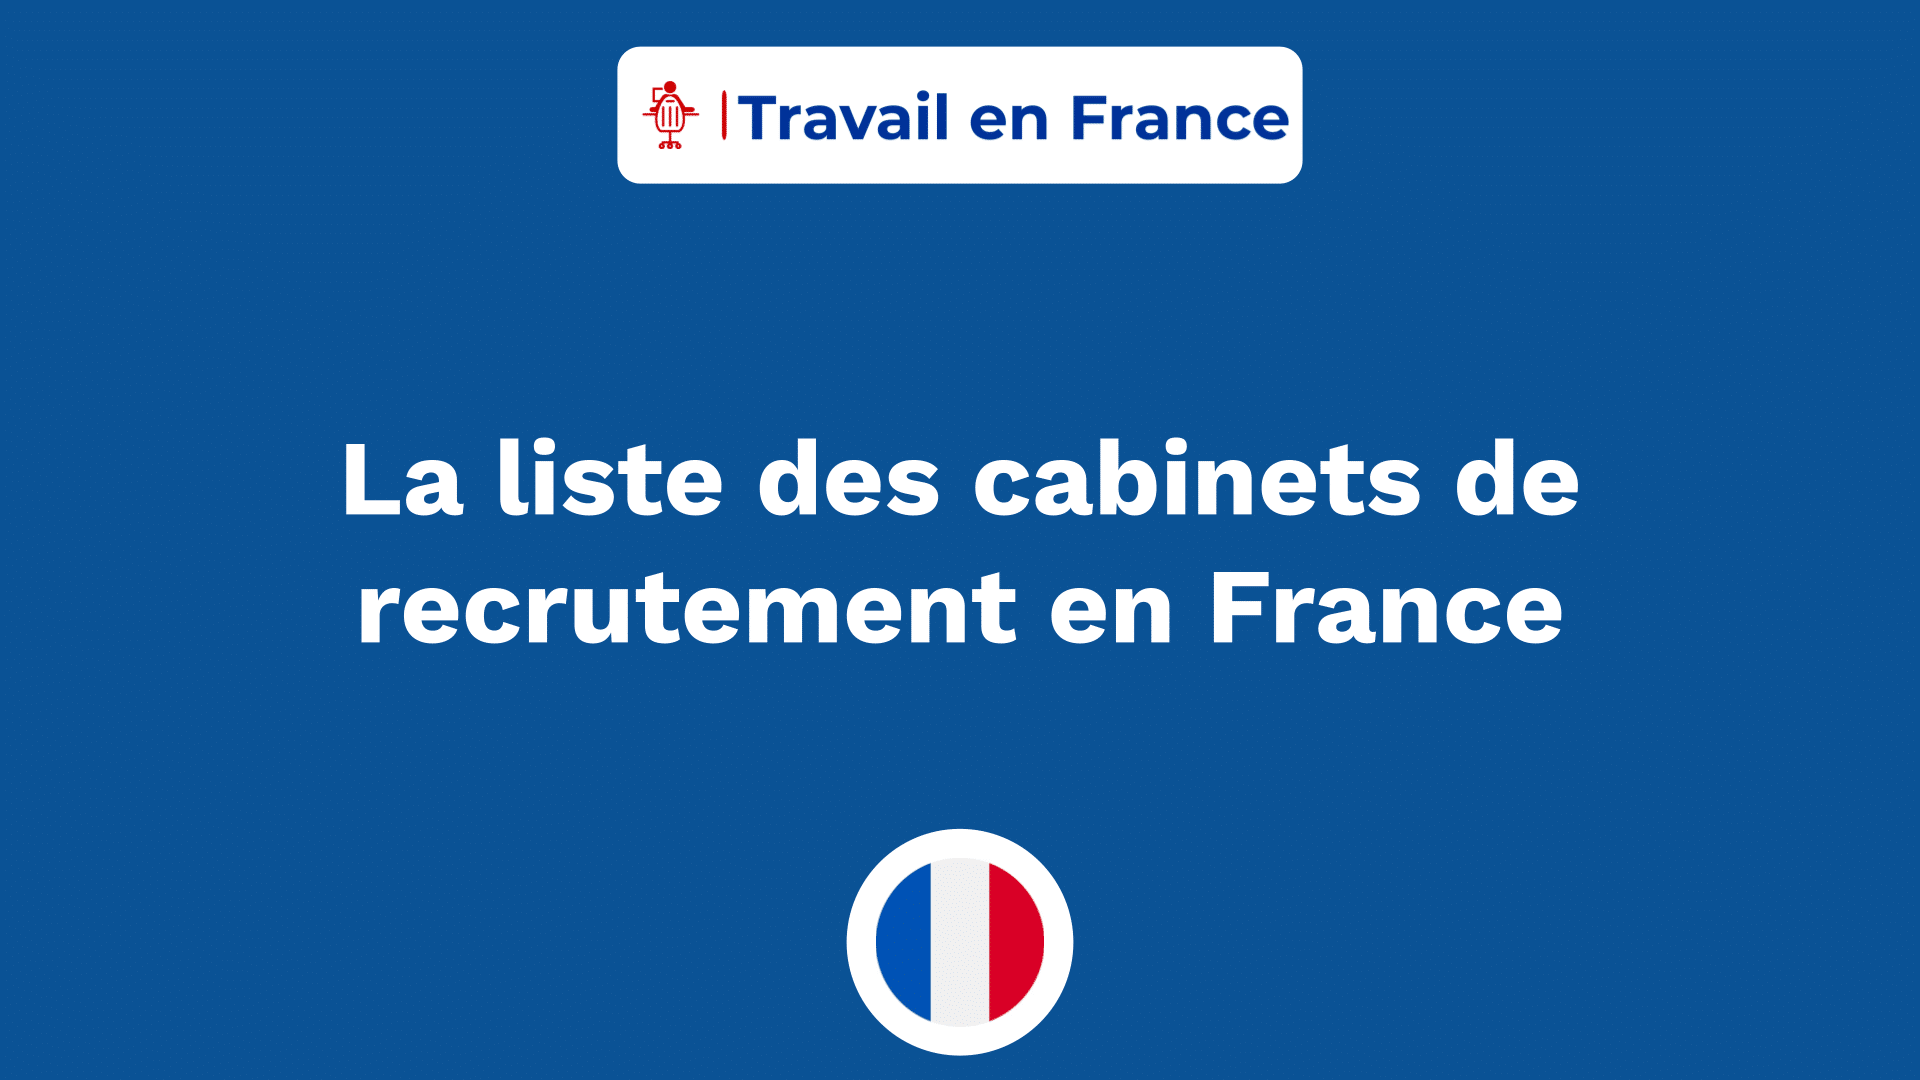 La liste des cabinets de recrutement en France